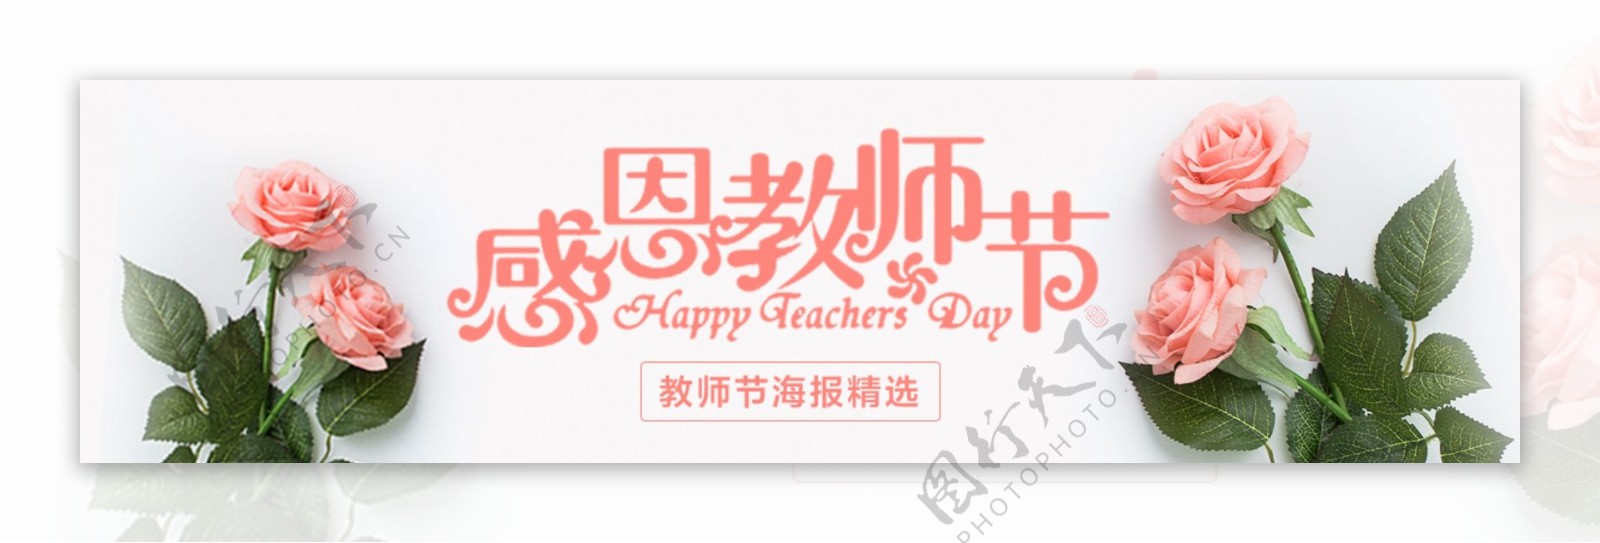 清新唯美教师节banner海报设计